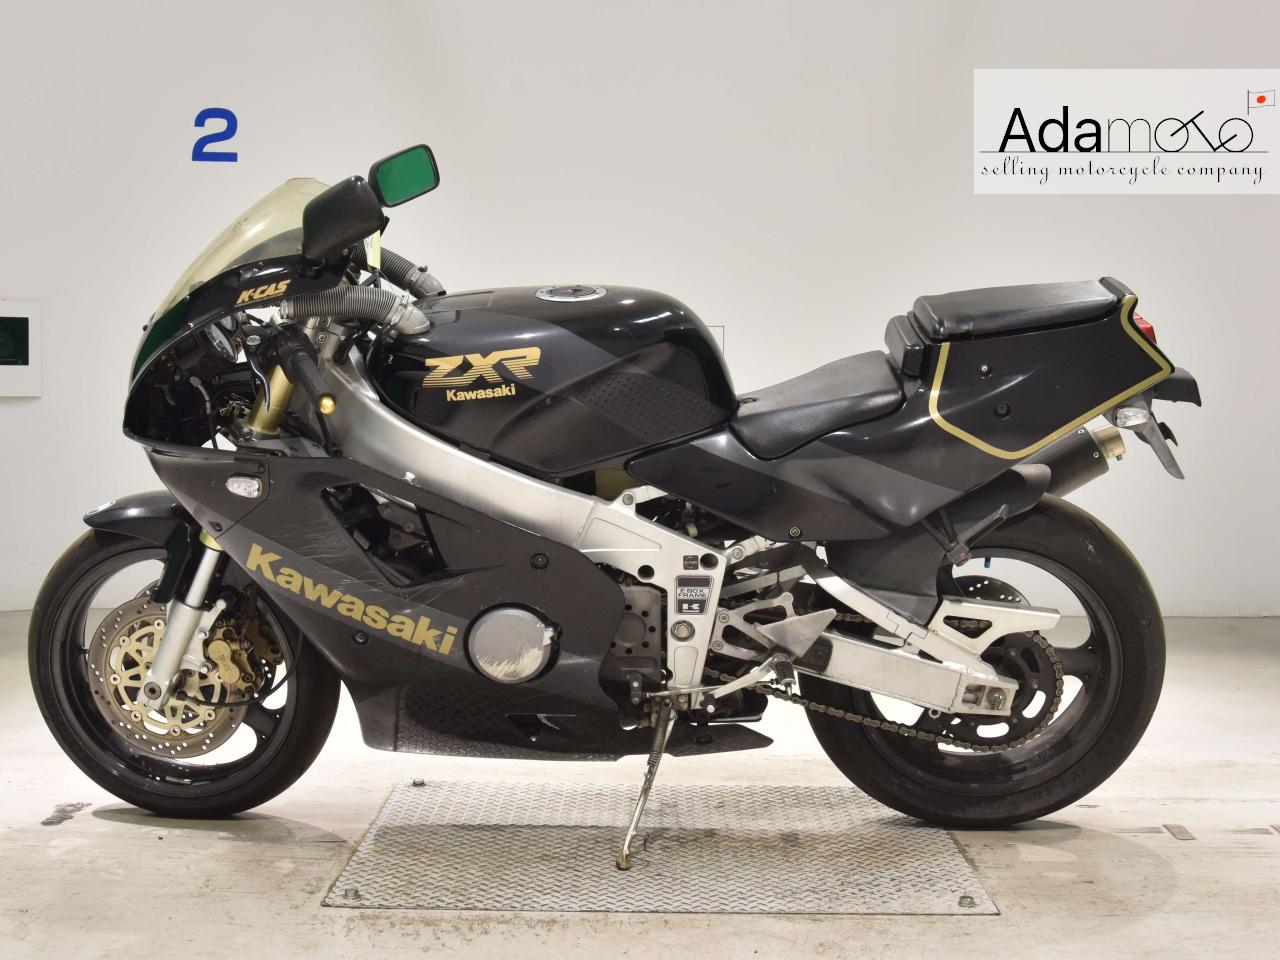 Kawasaki ZXR400 1 - Adamoto - Motorcycles from Japan